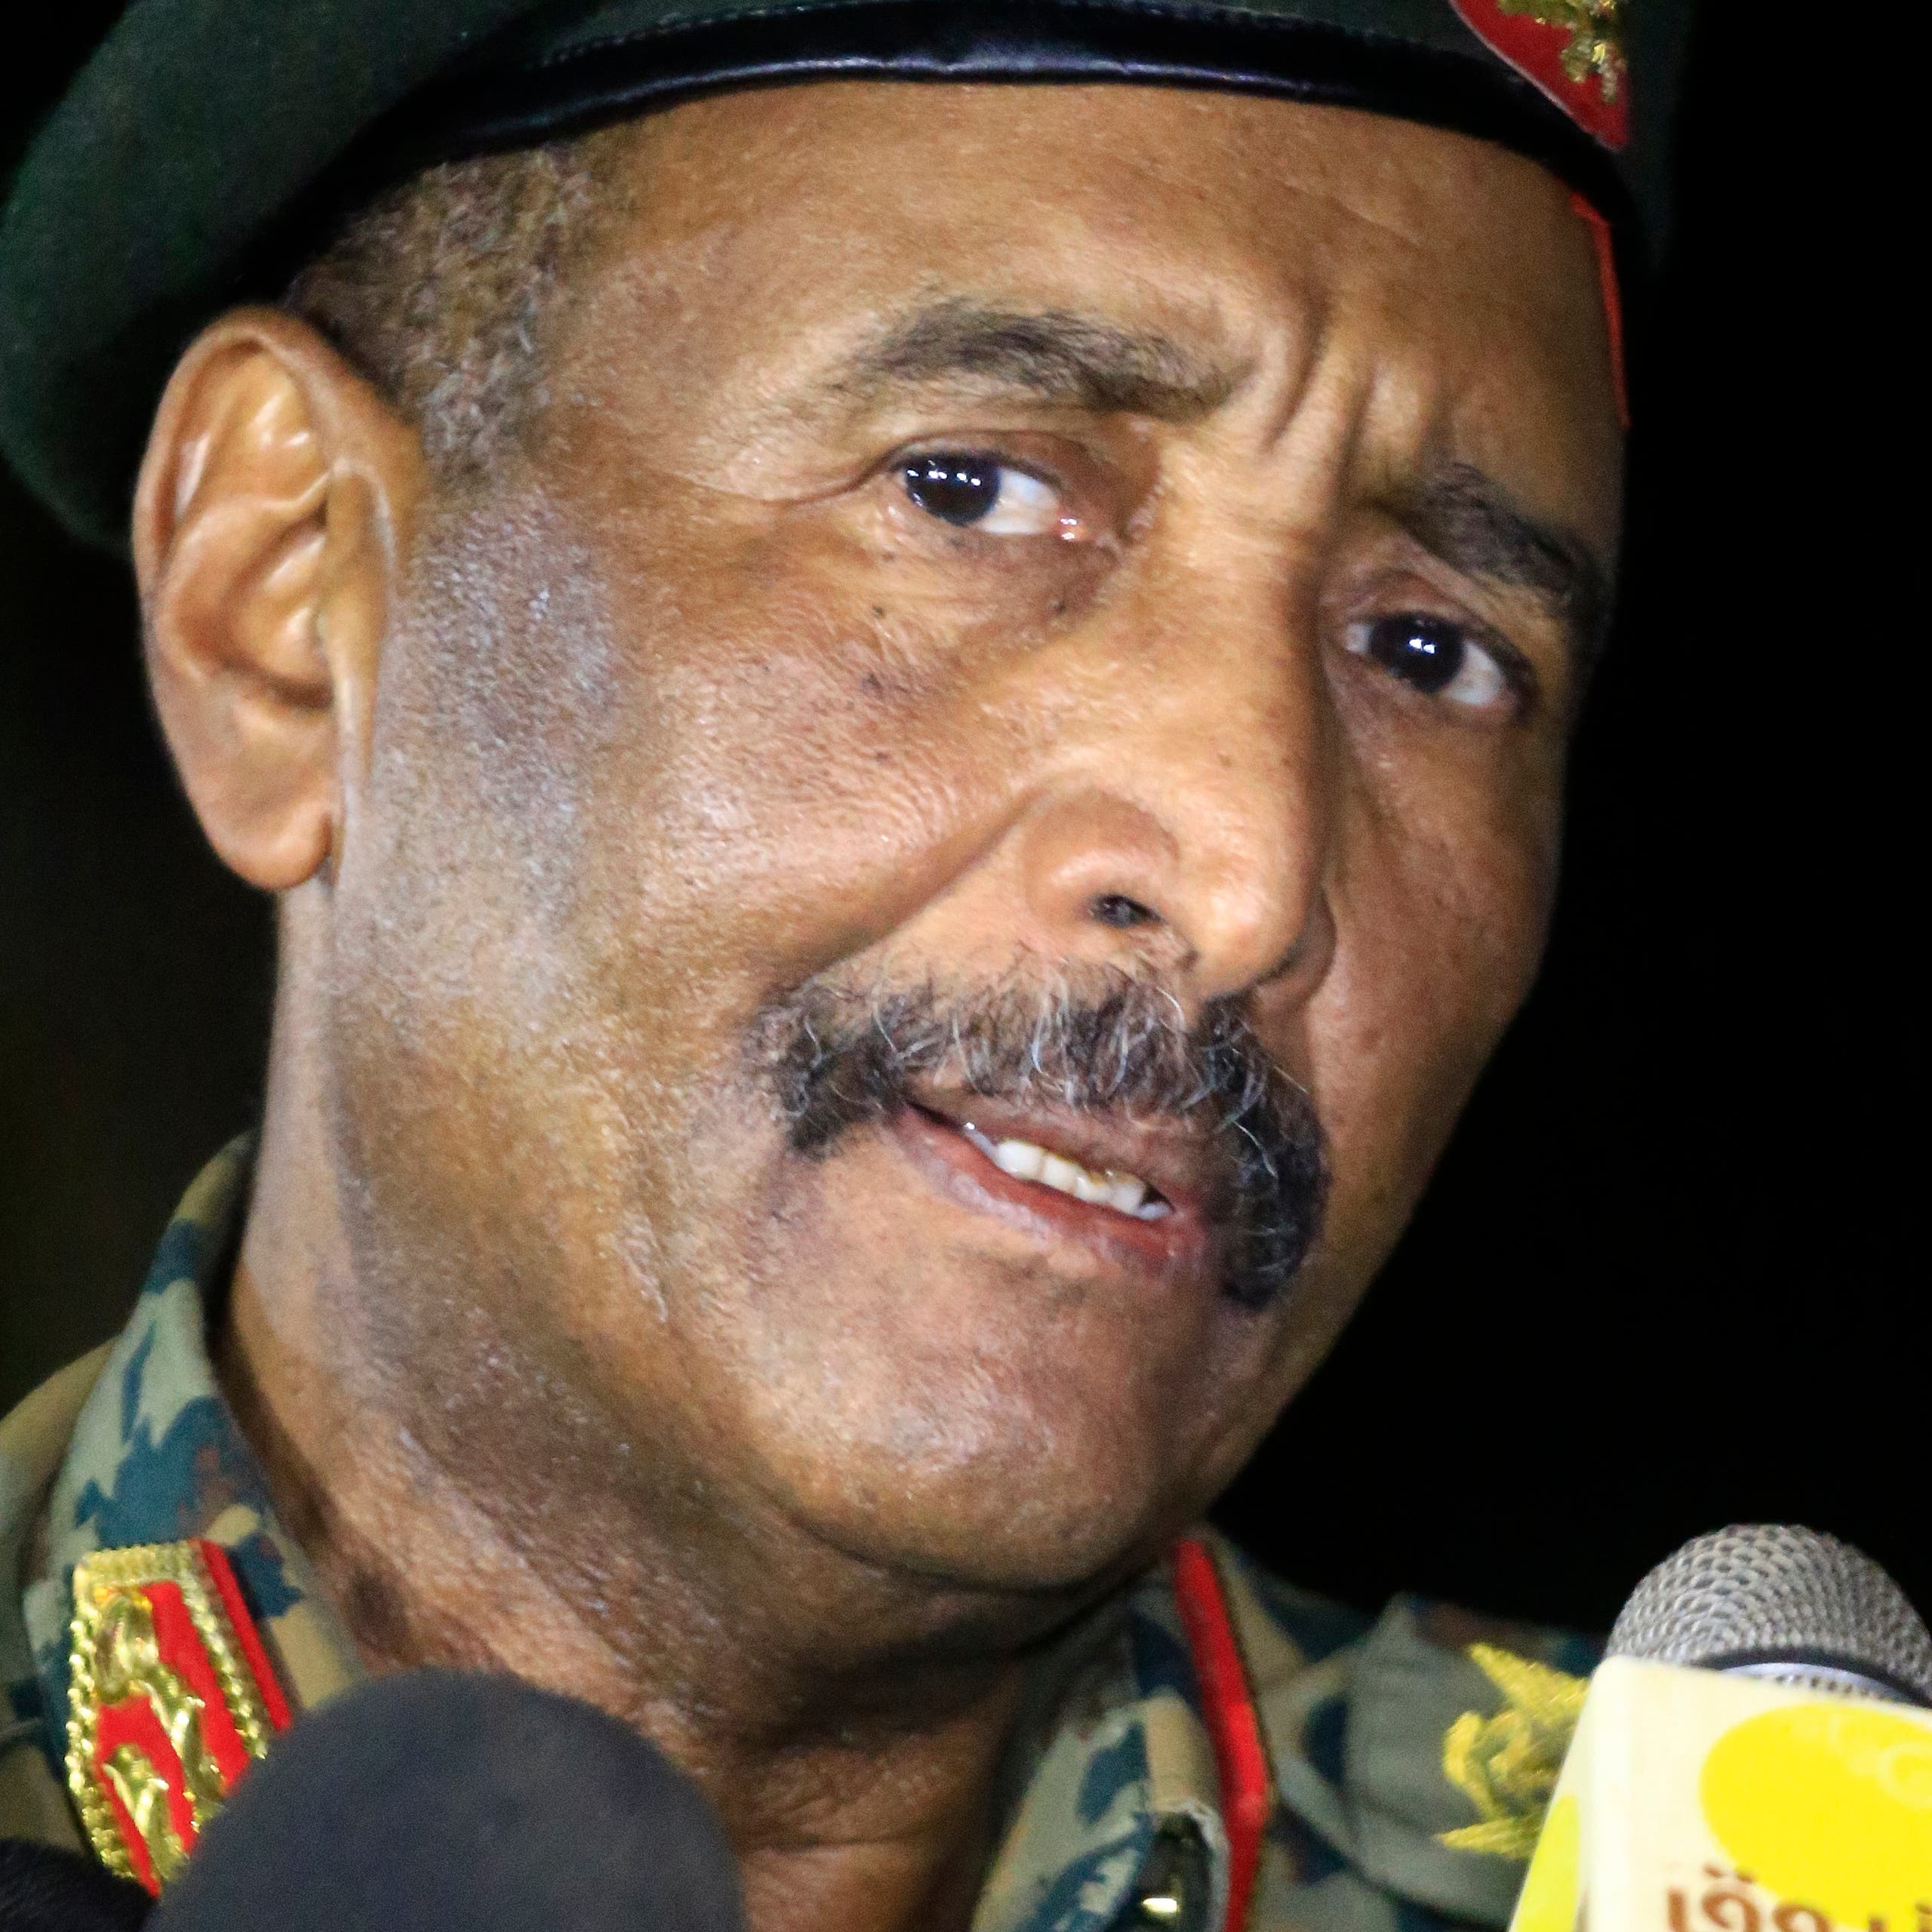 البرهان: رفع السودان من قائمة الإرهاب سينهي عزلتنا